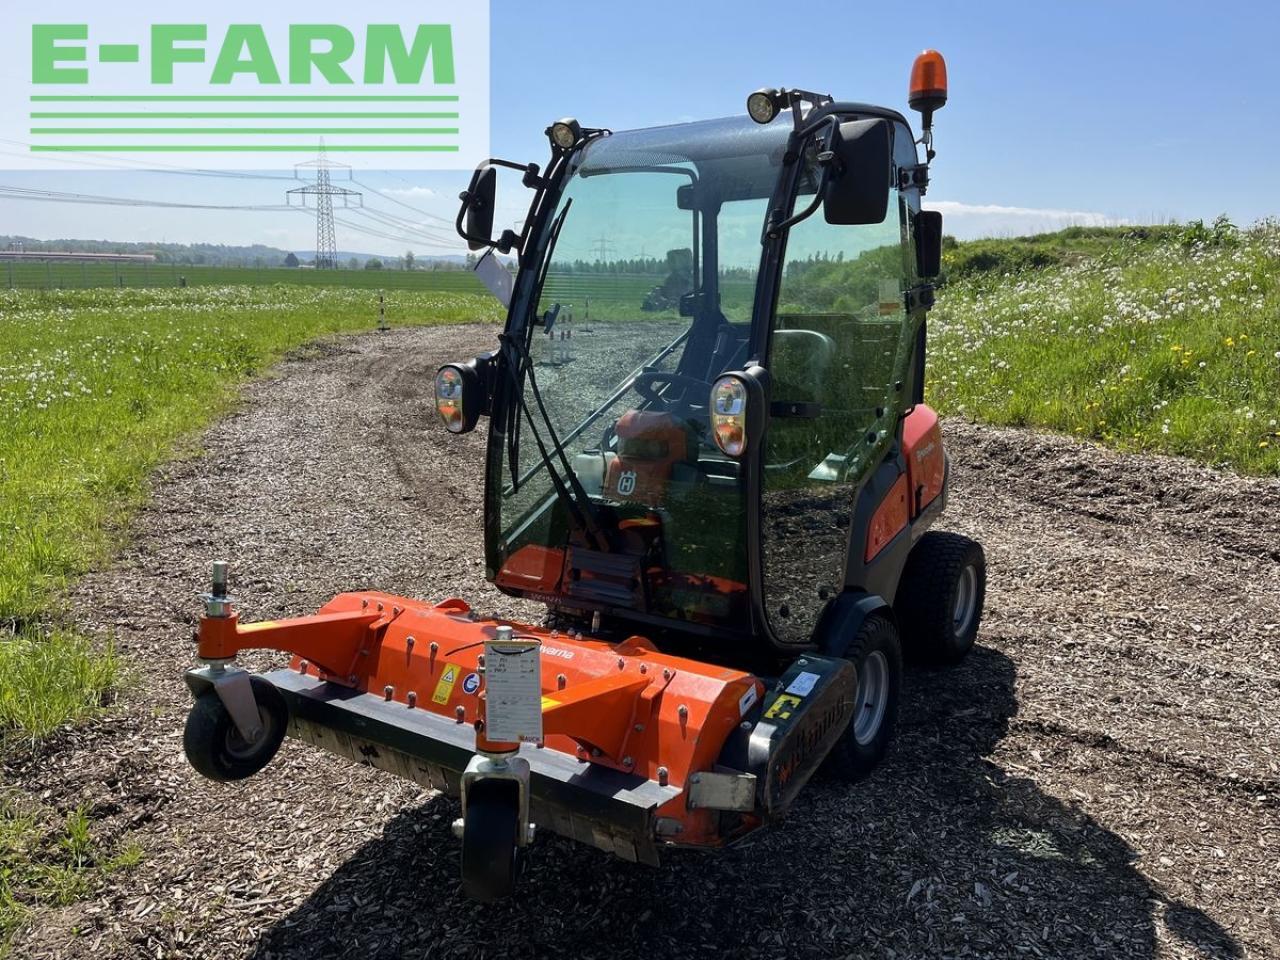 Farm tractor Husqvarna p525 d mit kabine und schleglmäher: picture 5